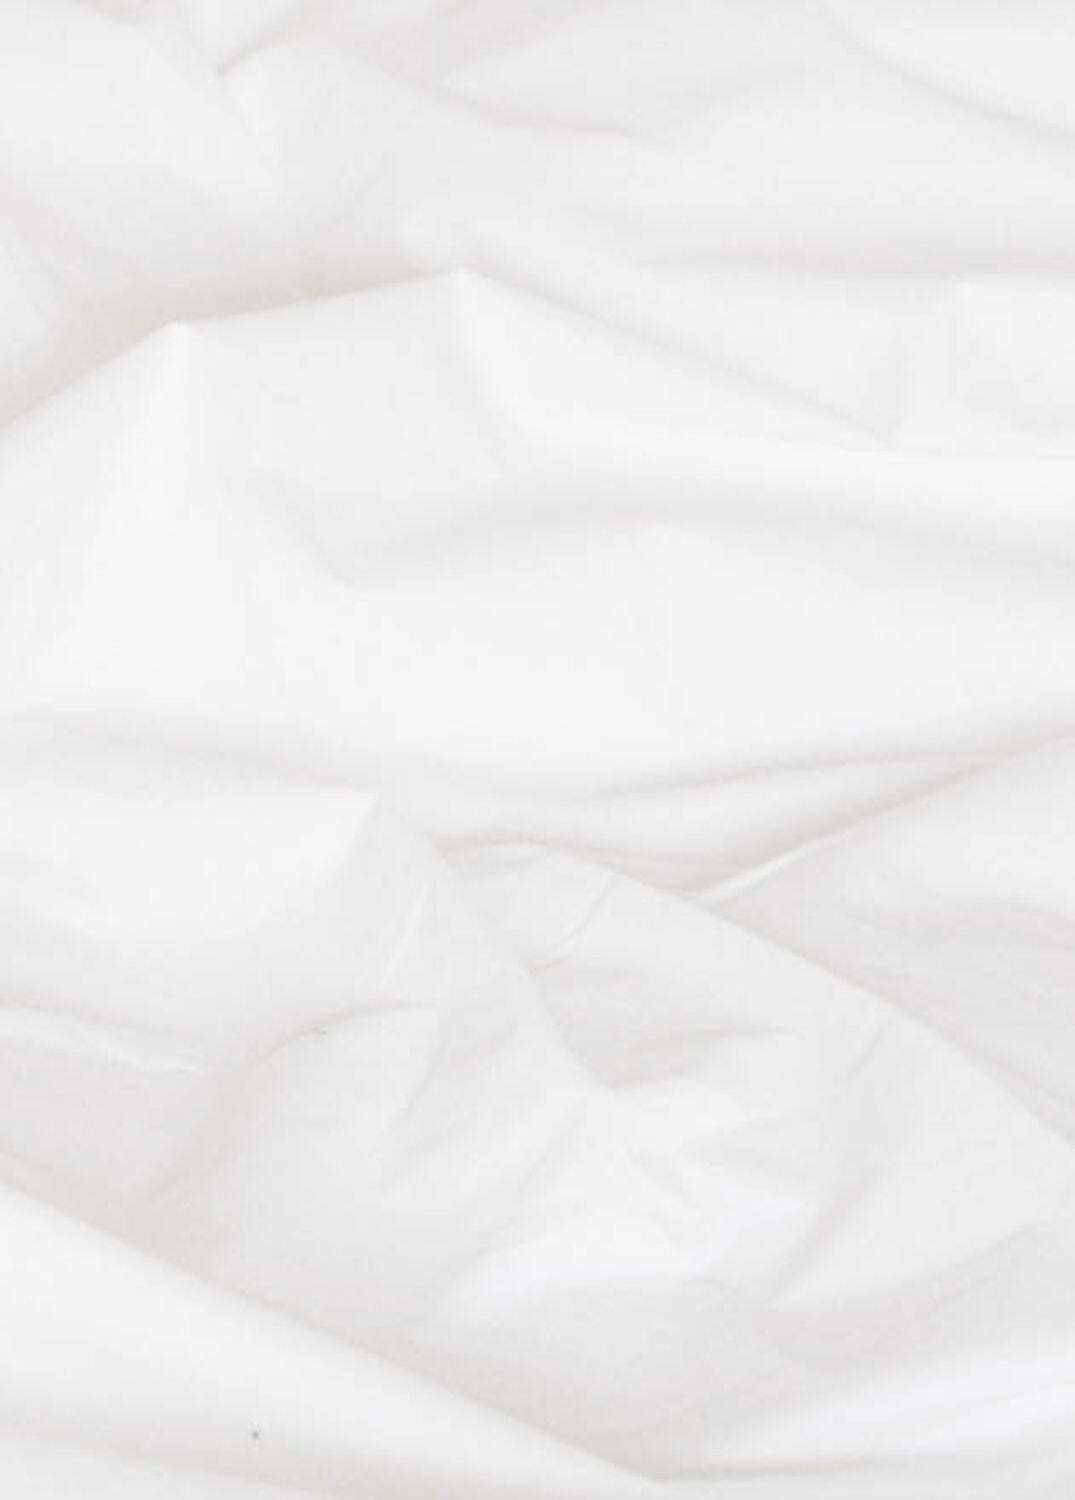 Bettwäsche Baumwollperkal Weiß 200 x 220 cm 3